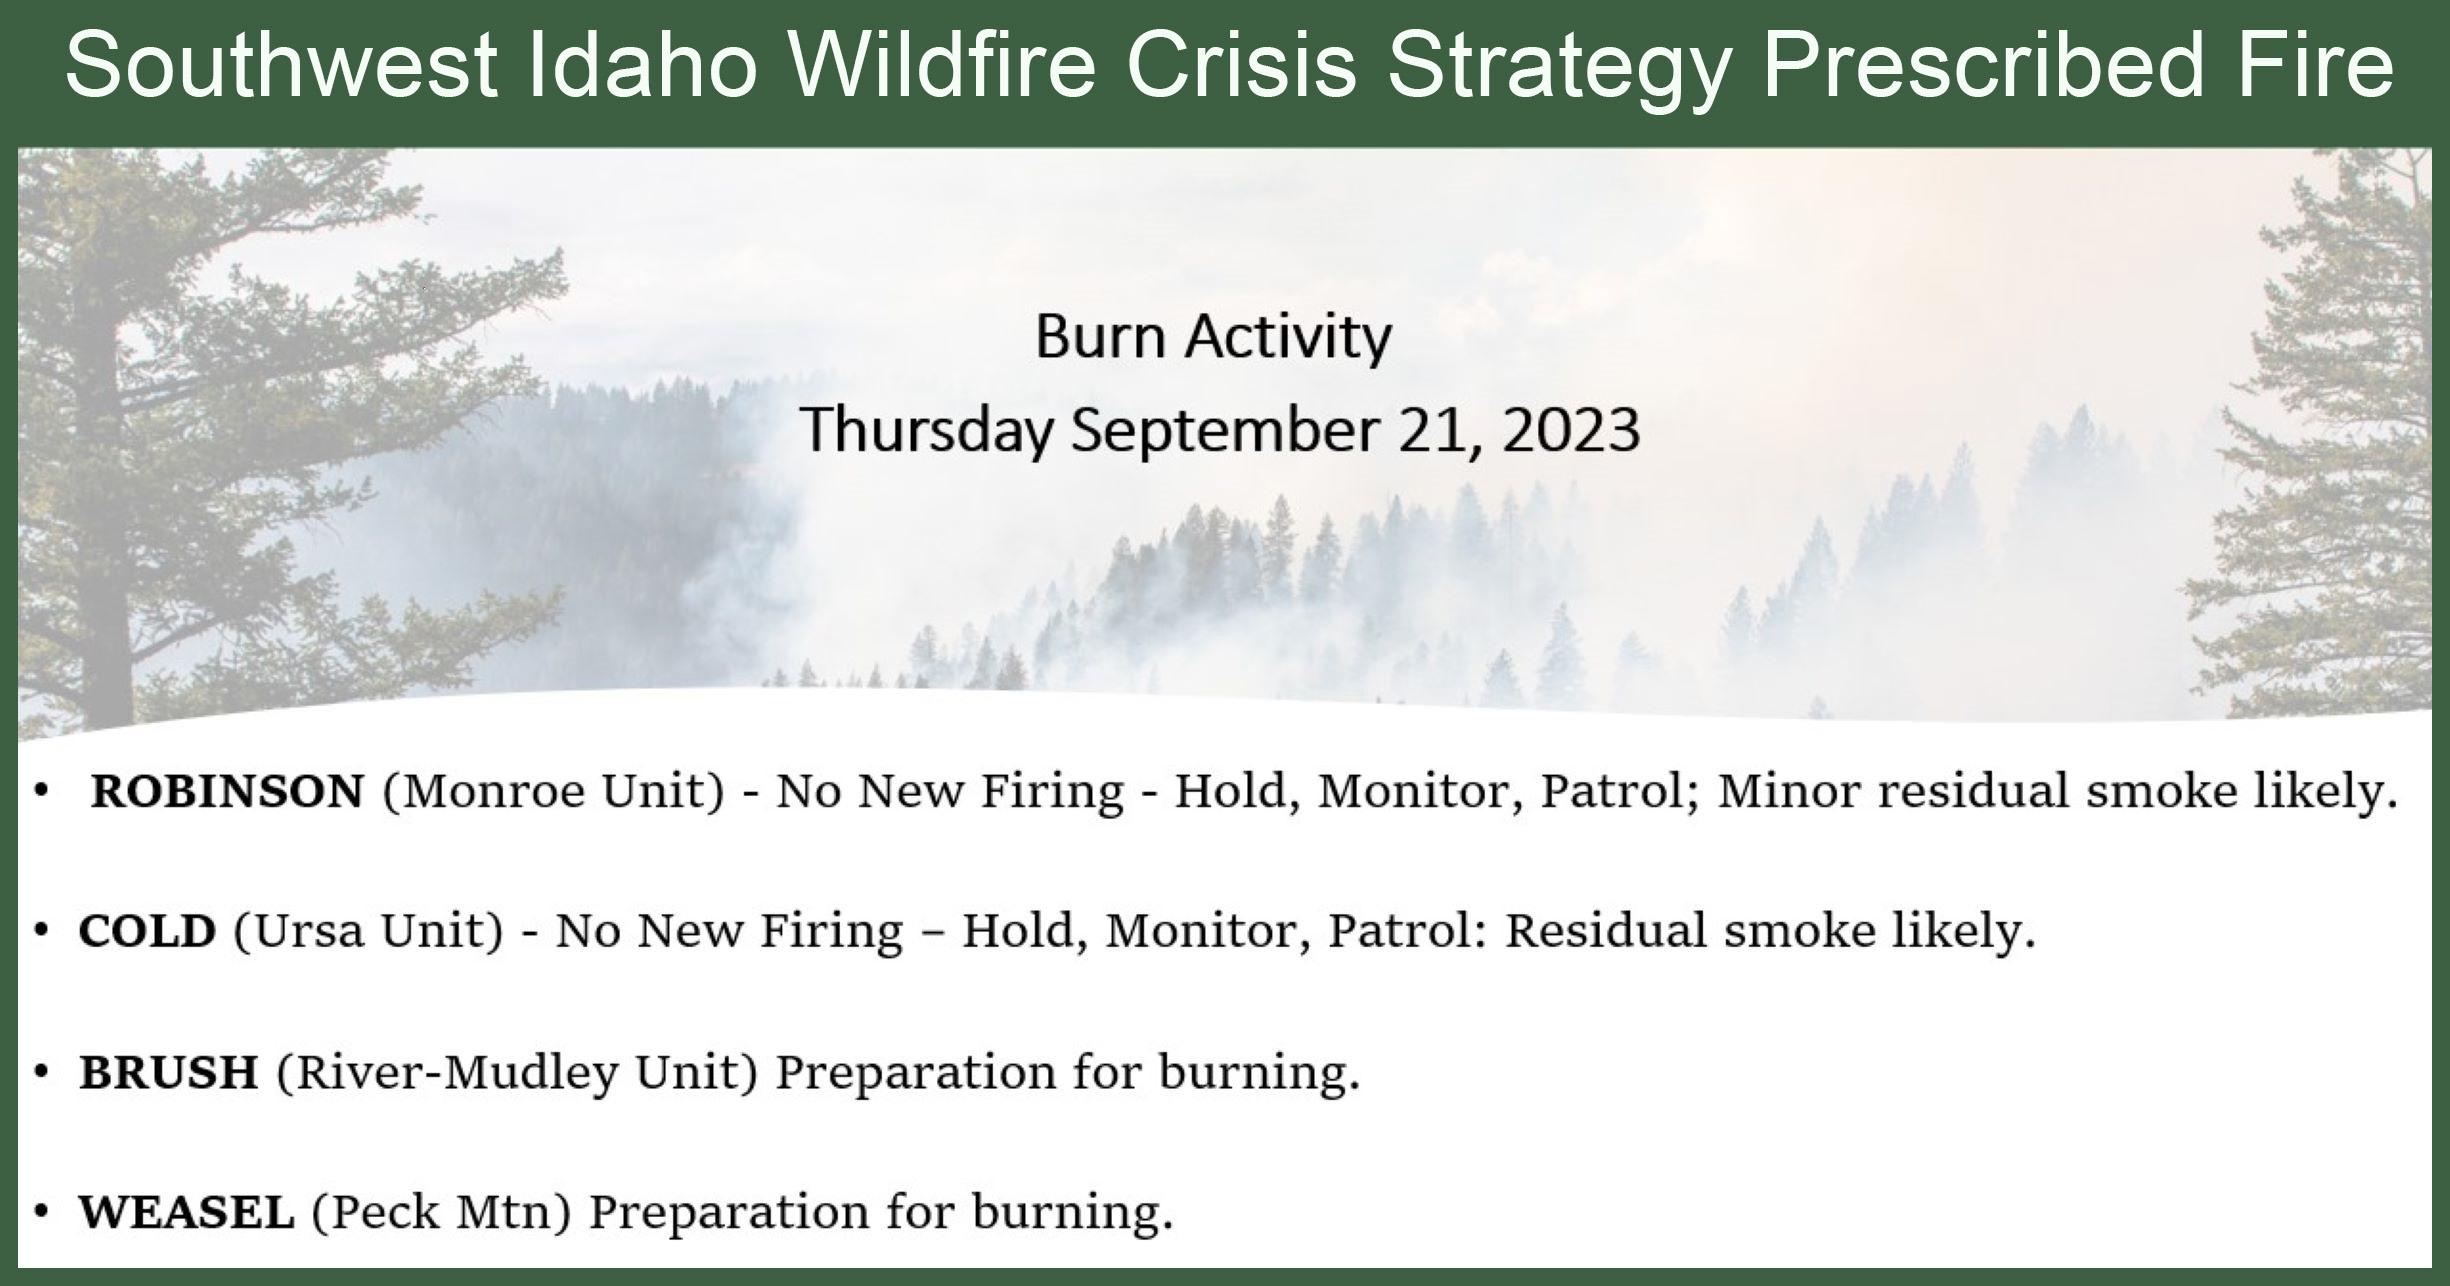 Thursday September 21 Burn Activity